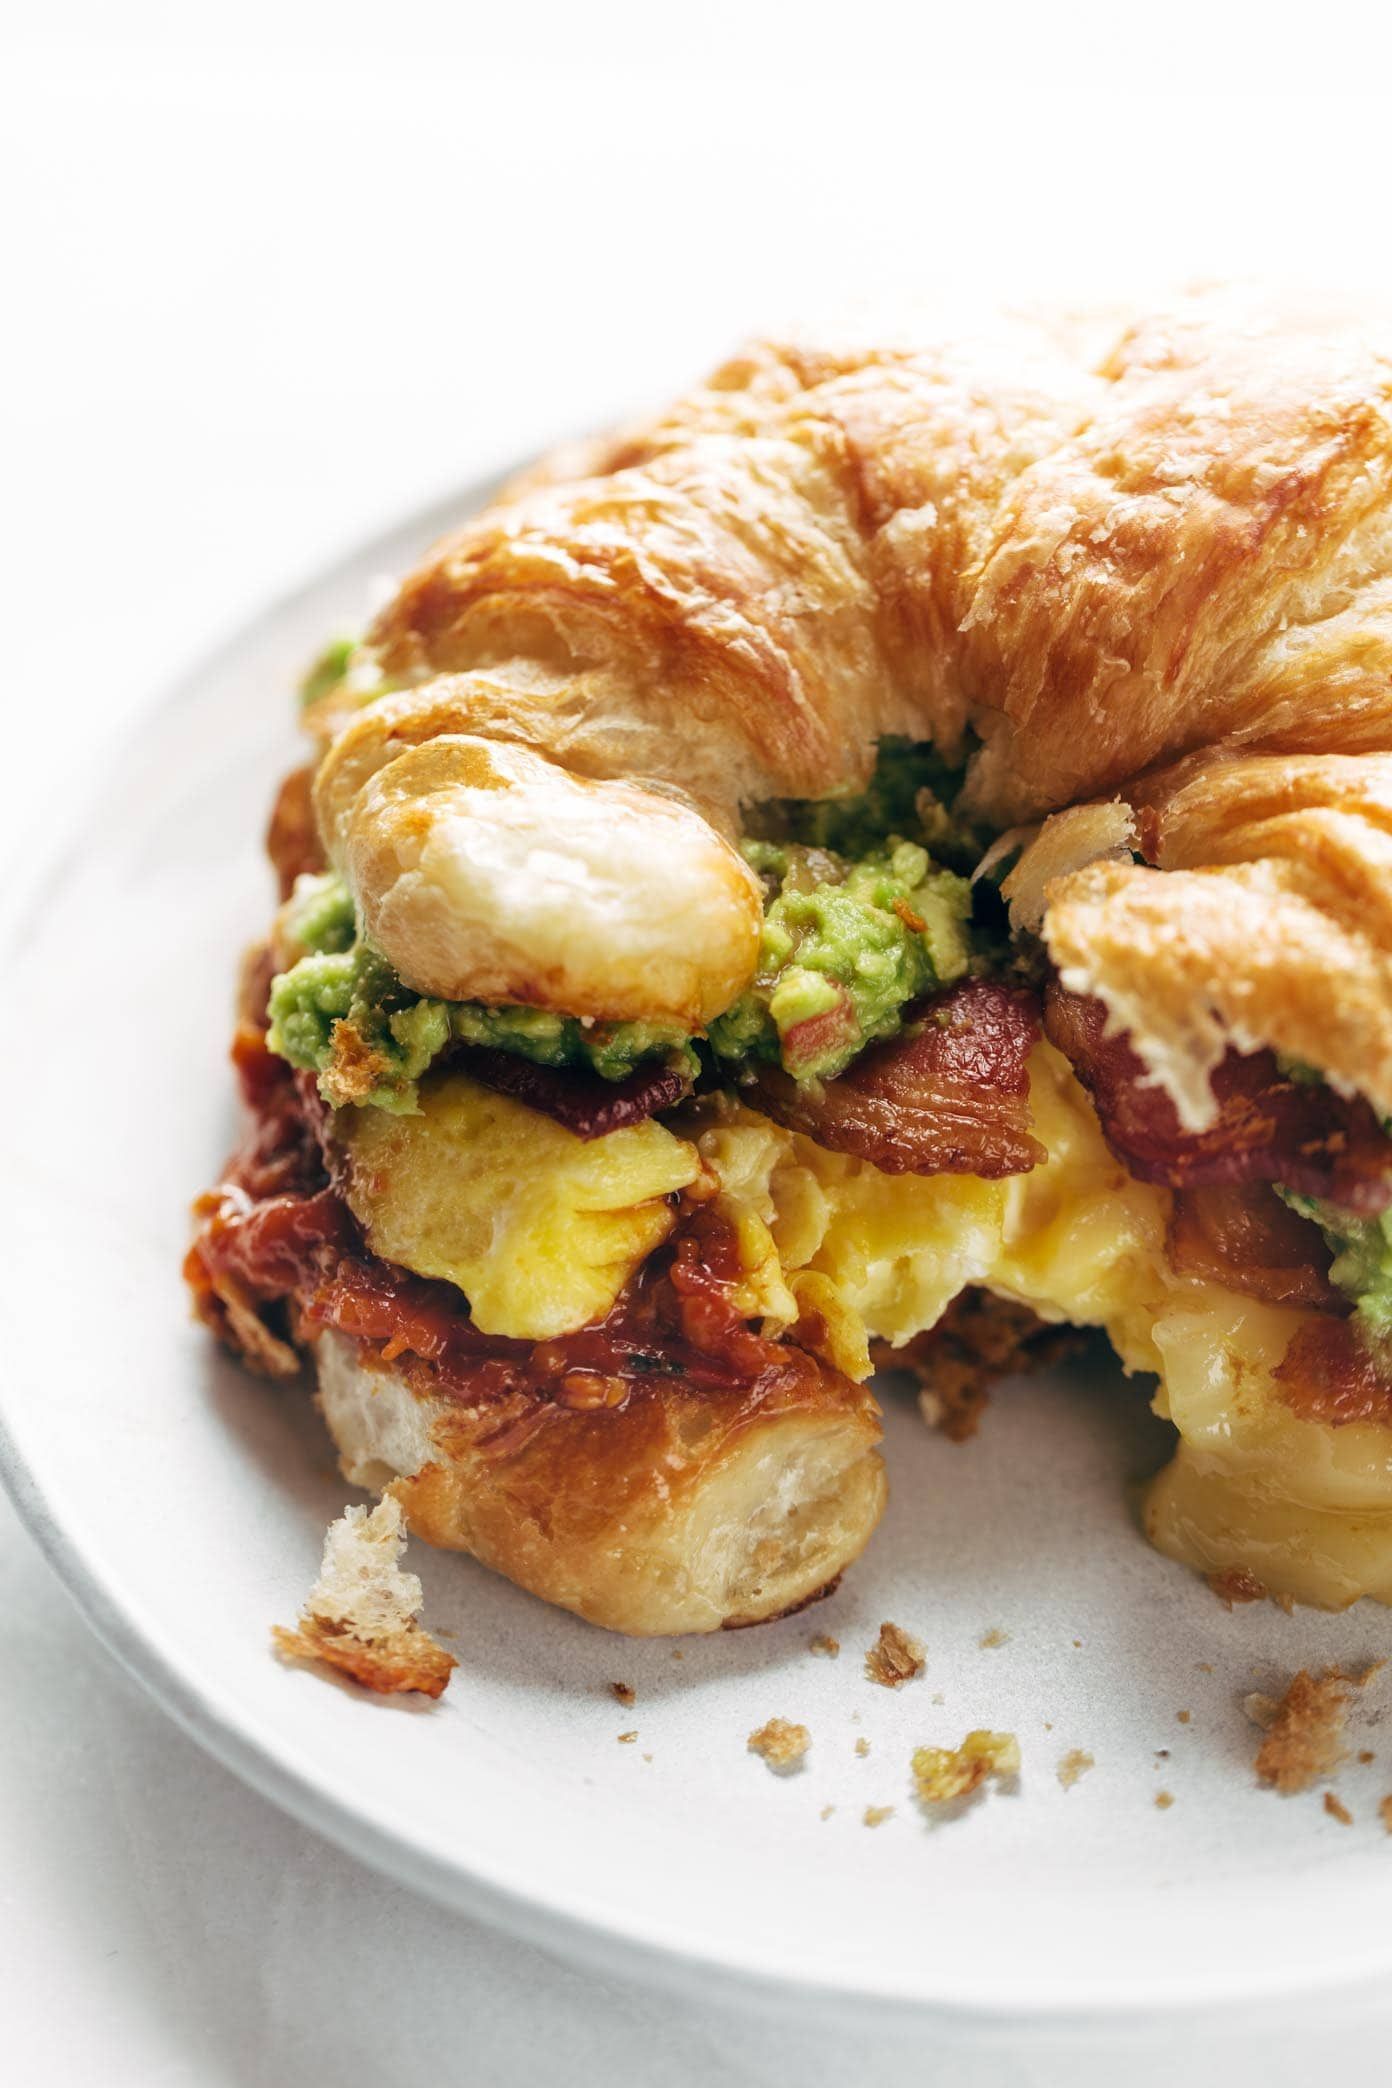 19 breakfast sandwich recipes
 ideas